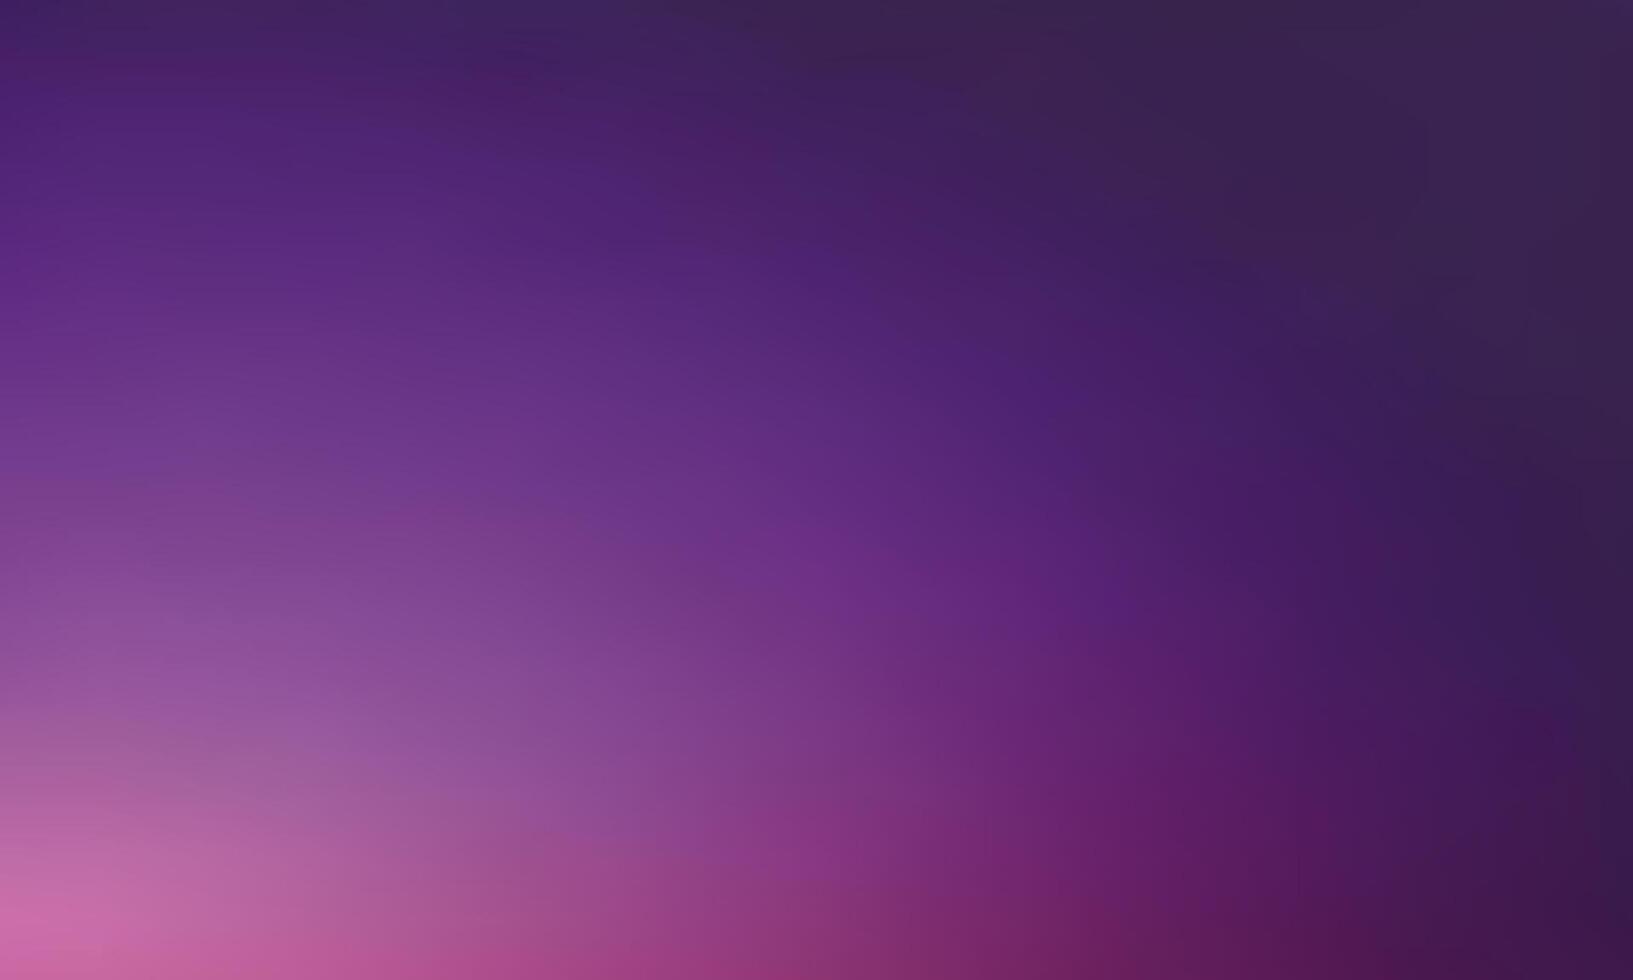 dunkel lila bunt Gradient Hintergrund Design vektor